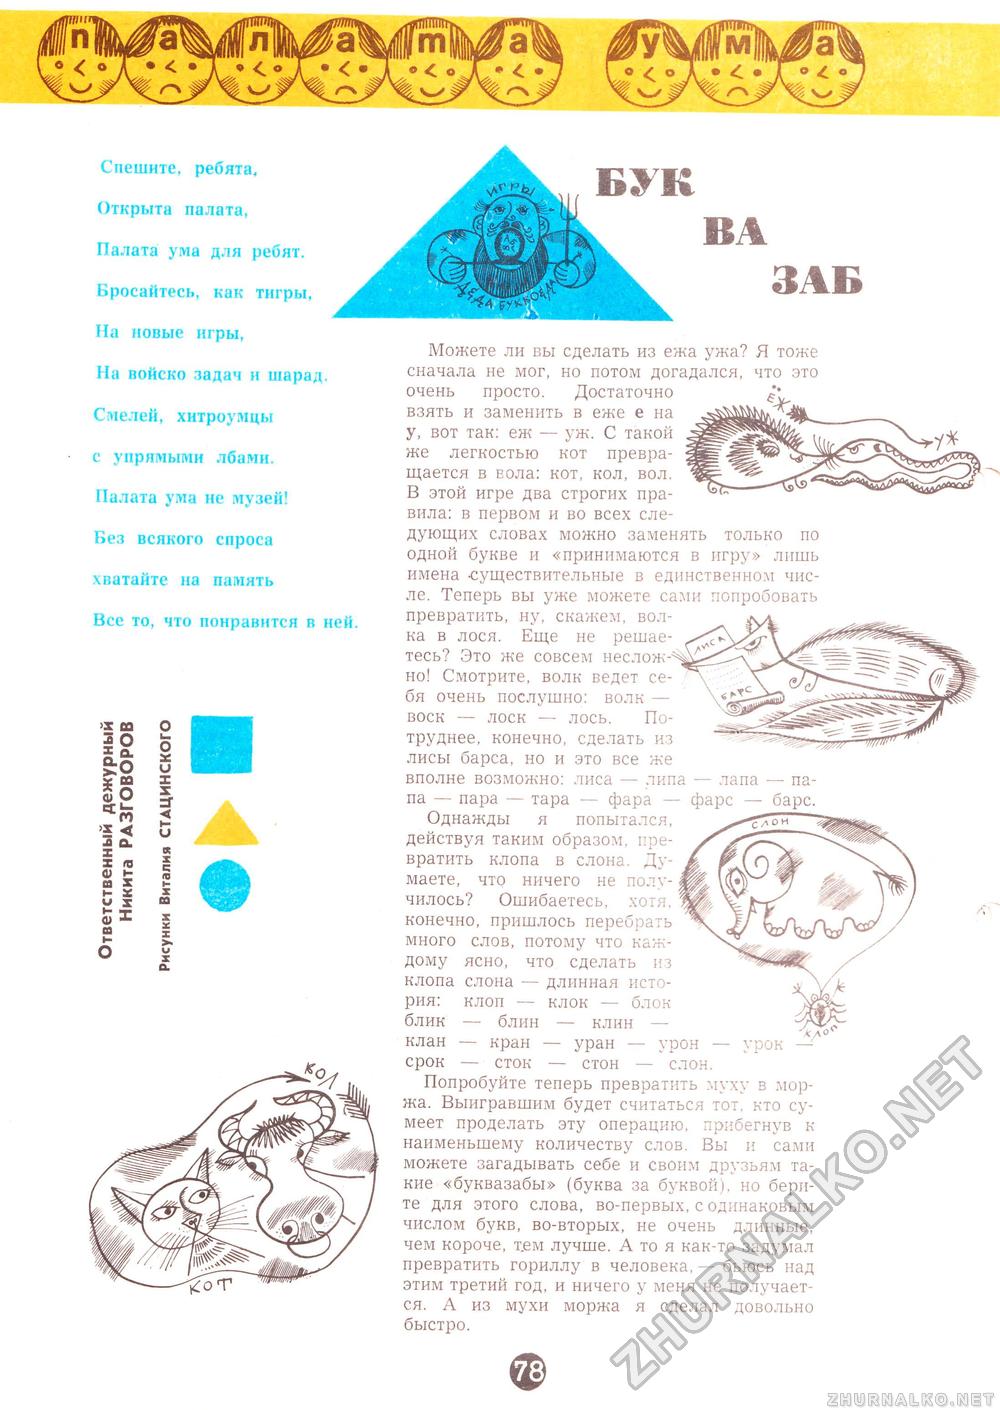  1968-03,  76